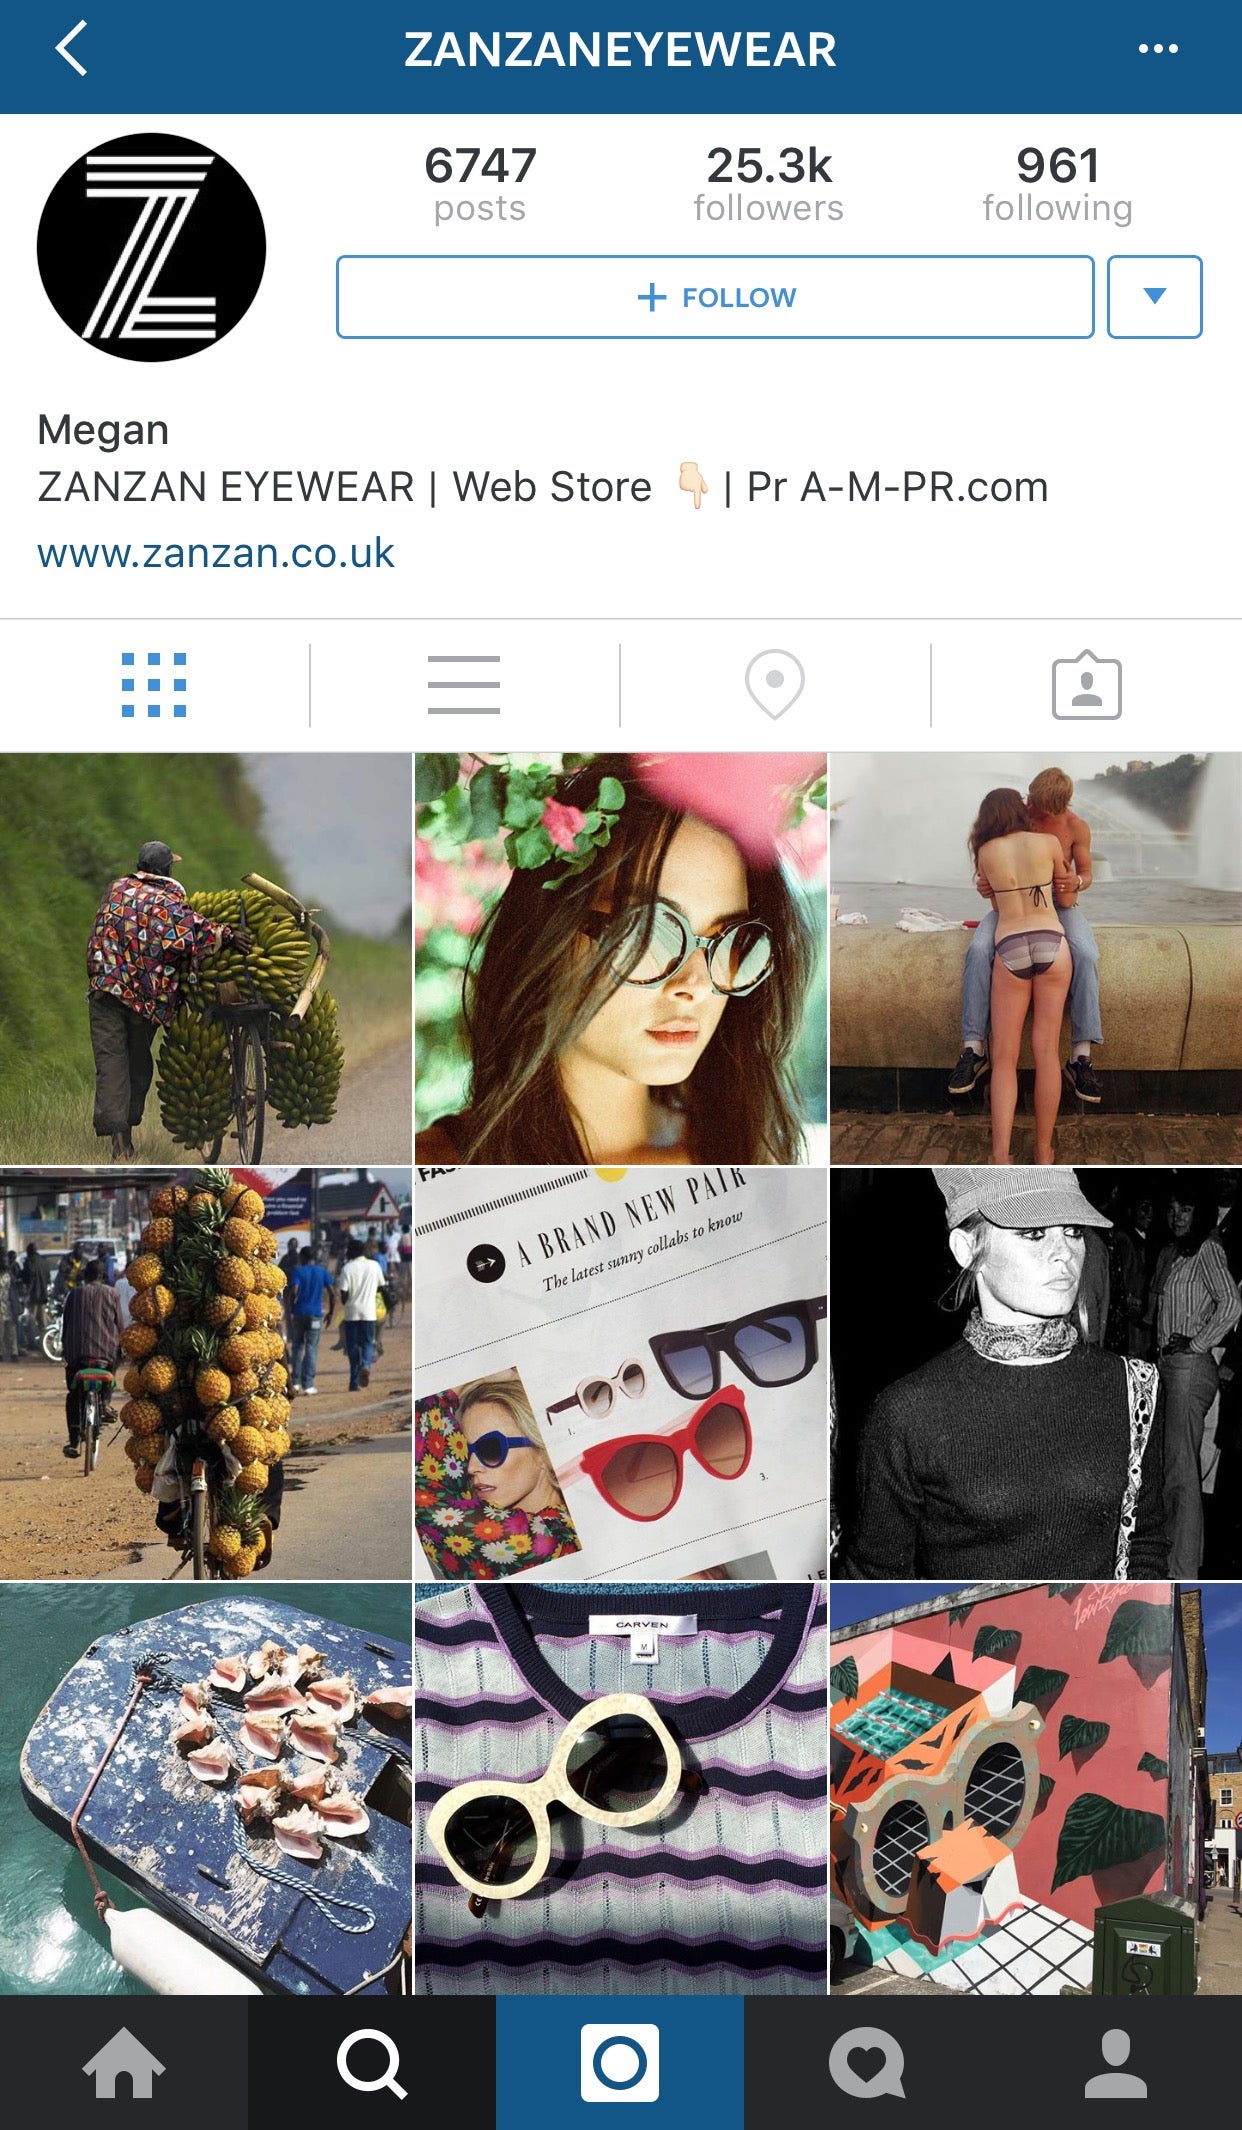 ZanZan Eyewear's mix of inspiration and product on their Instagram (@zanzaneyewear), by Alexander Fury